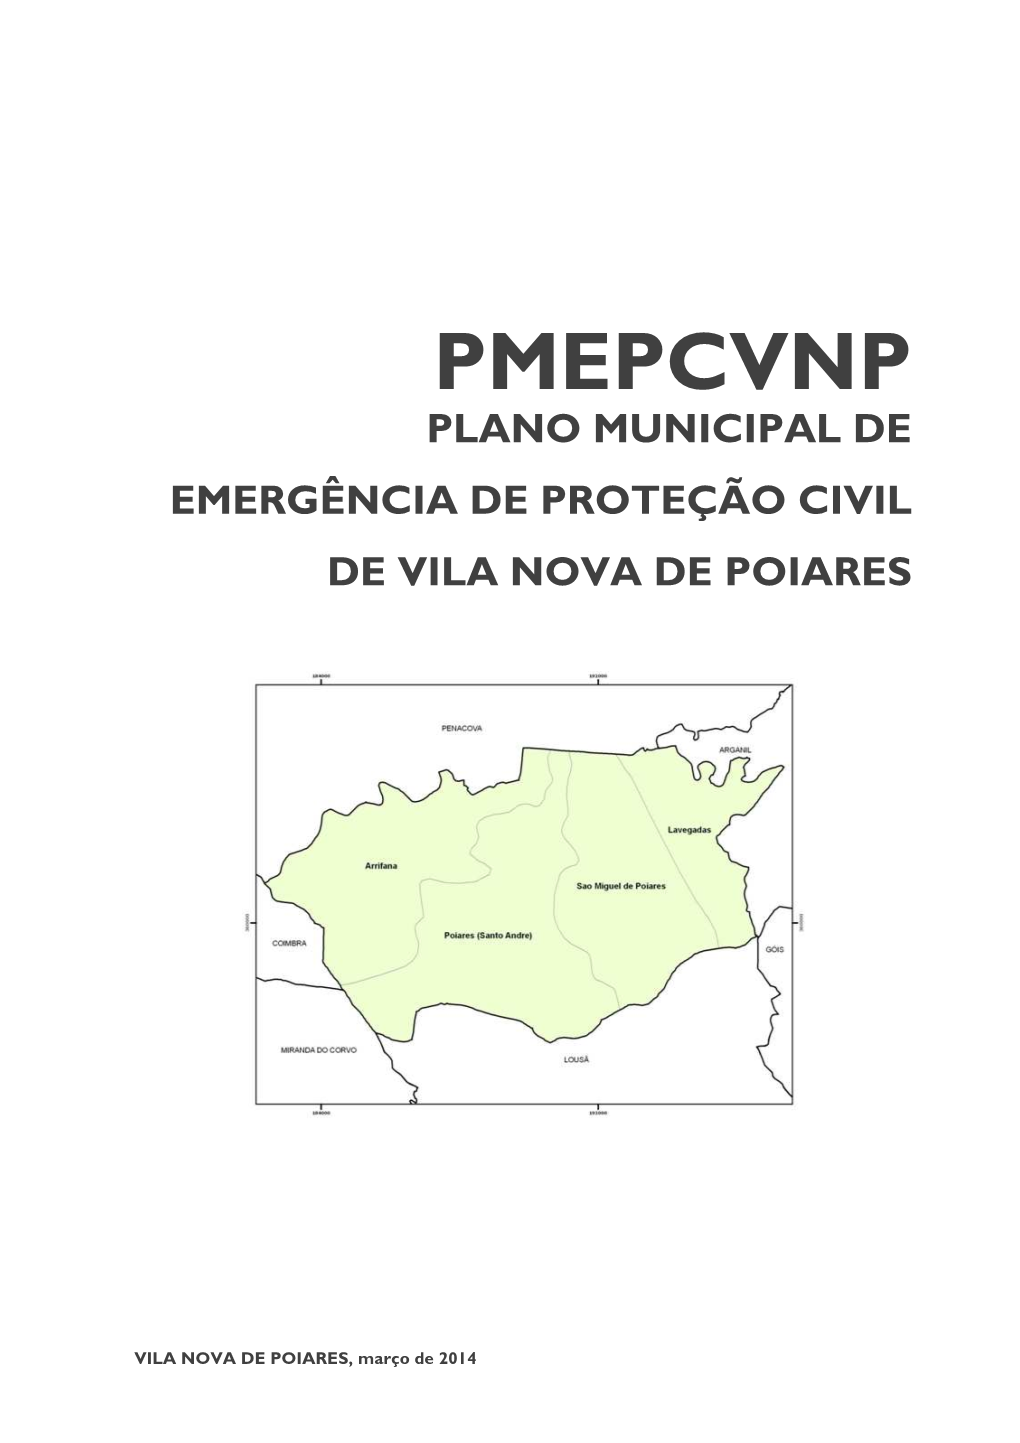 Pmepcvnp Plano Municipal De Emergência De Proteção Civil De Vila Nova De Poiares